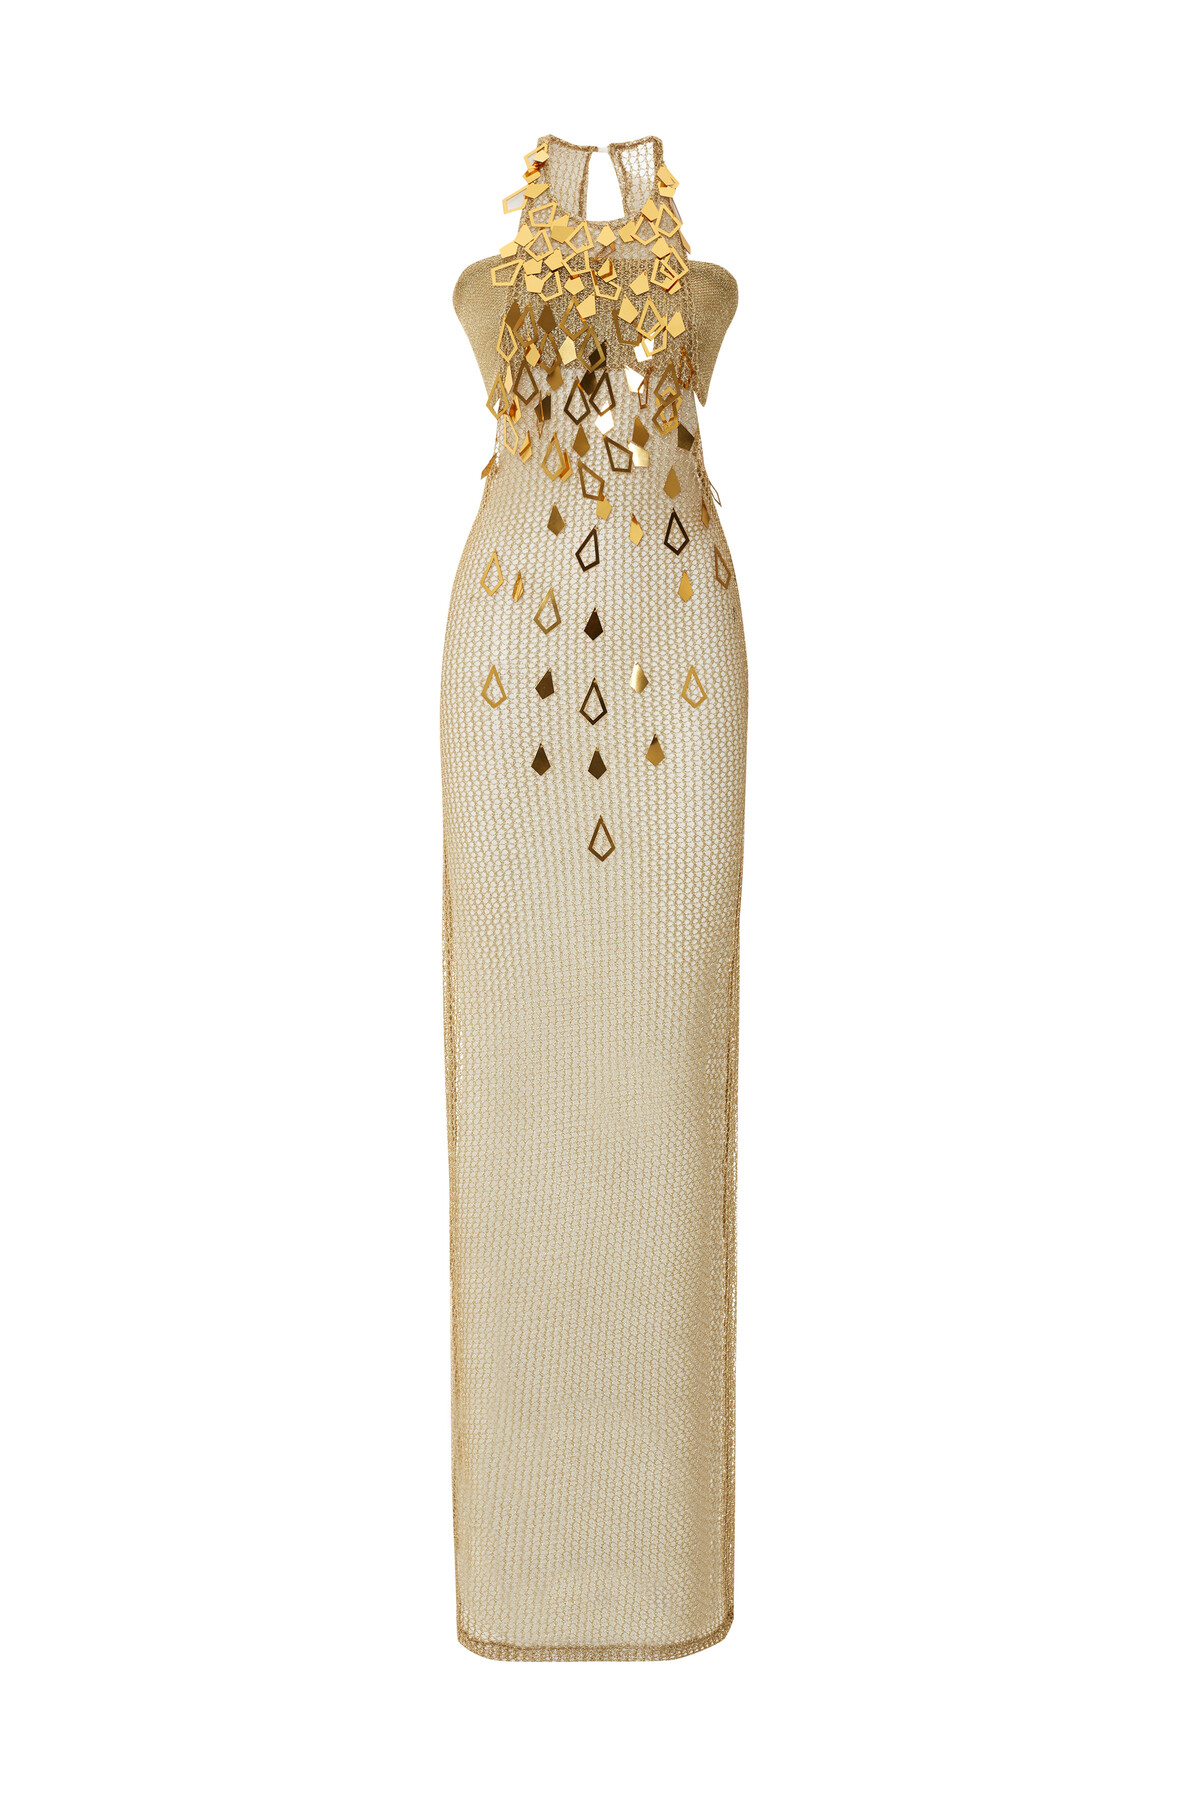 Gold Zırh Halter Yaka Büstier Detayli Art Deco Elbise